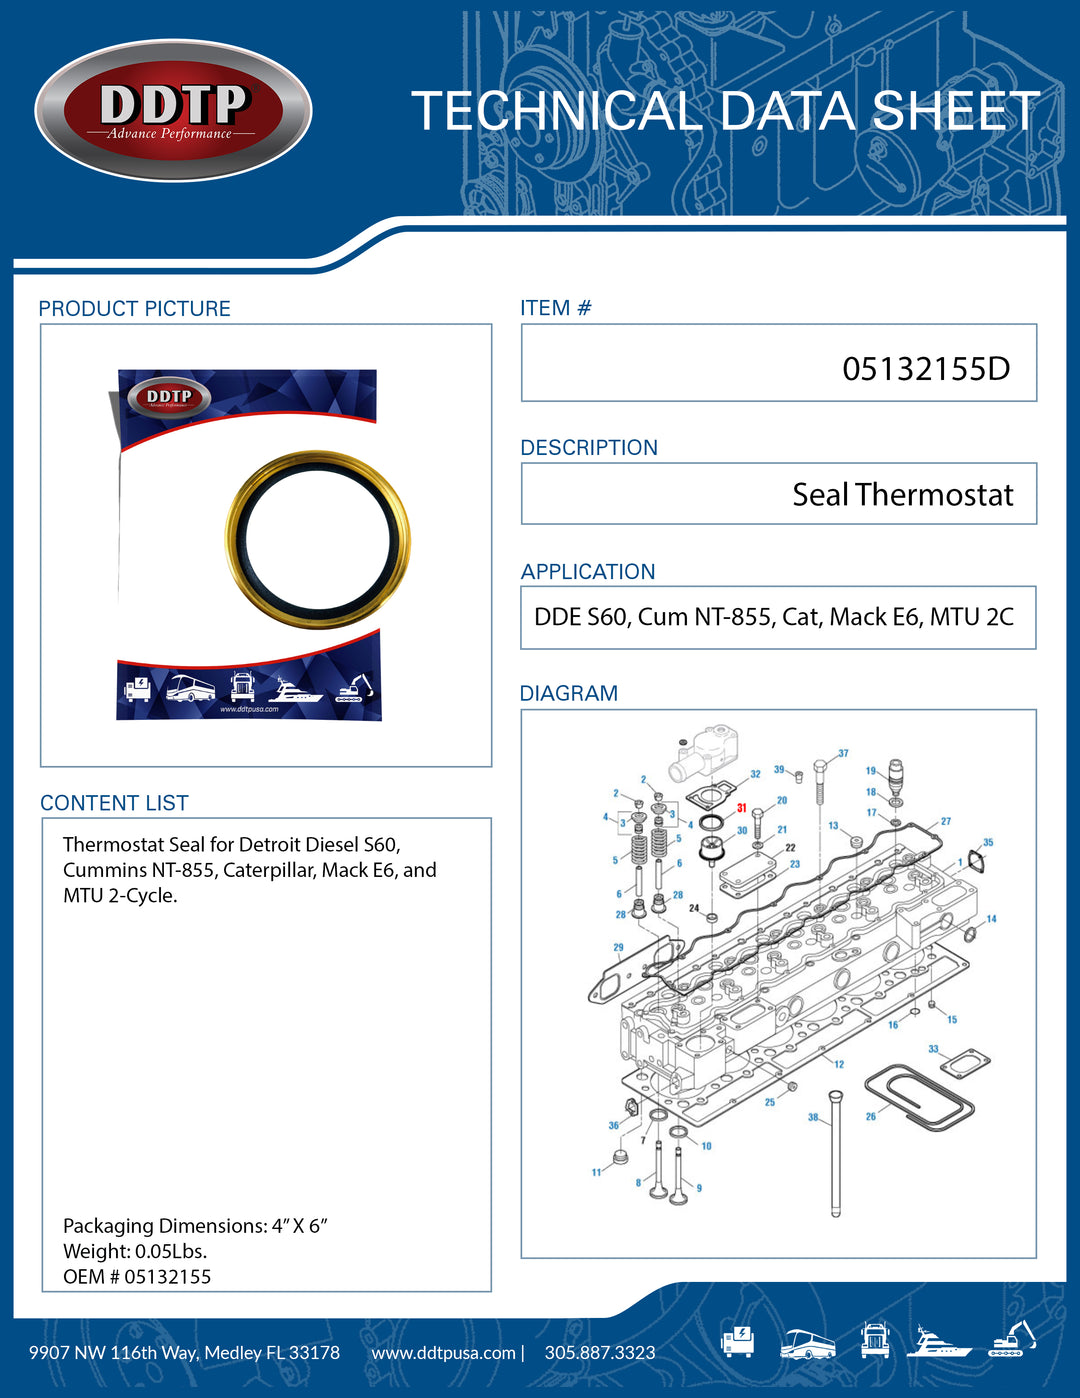 Seal Thermostat for DDE S60, Cum NT-855, Cat, Mack E6, MTU 2C (05132155)